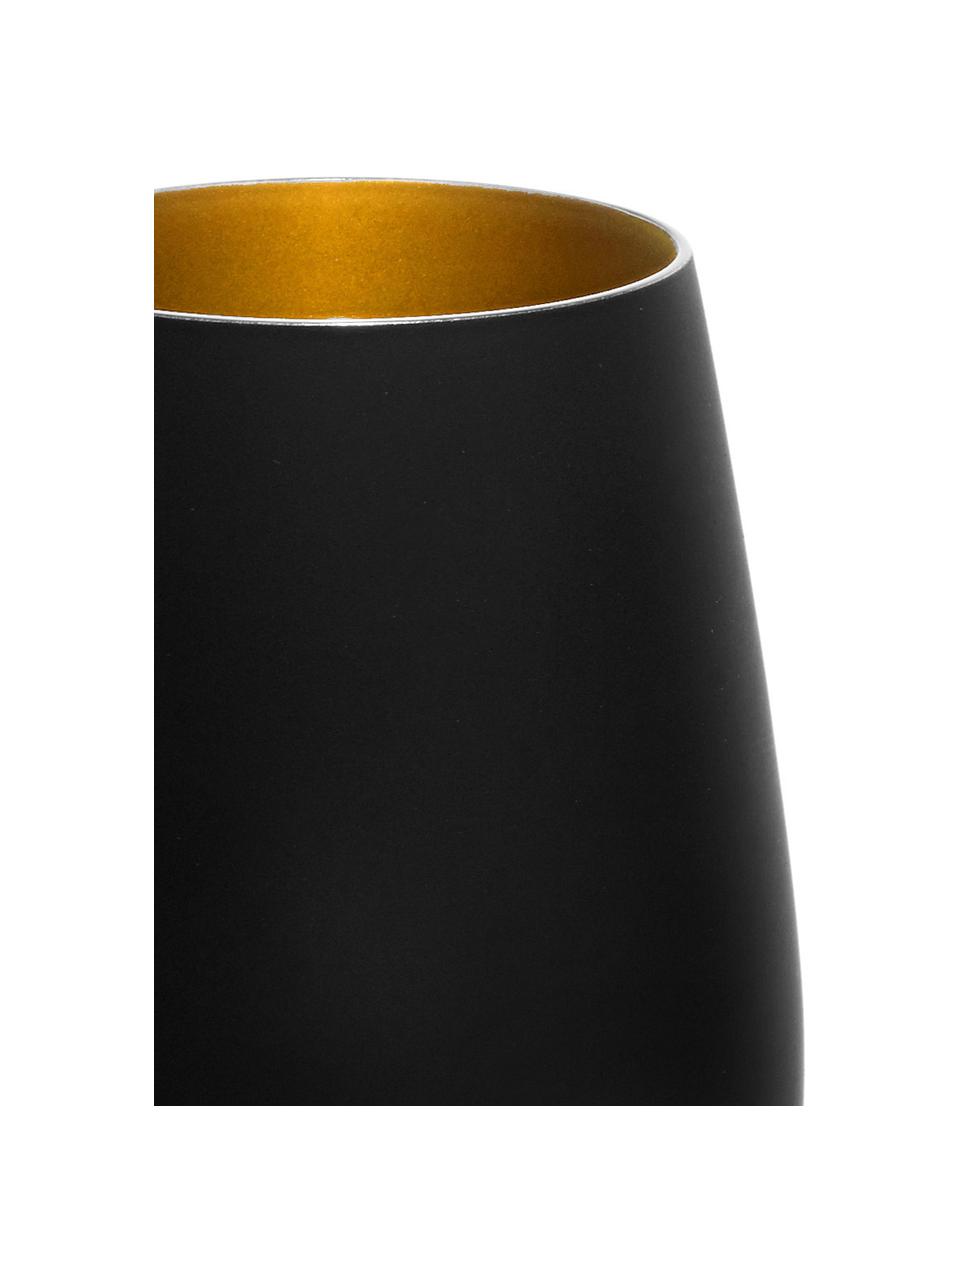 Kristall-Longdrinkgläser Elements in Schwarz/Gold, 6 Stück, Kristallglas, beschichtet, Schwarz, Messingfarben, Ø 9 x H 12 cm, 465 ml